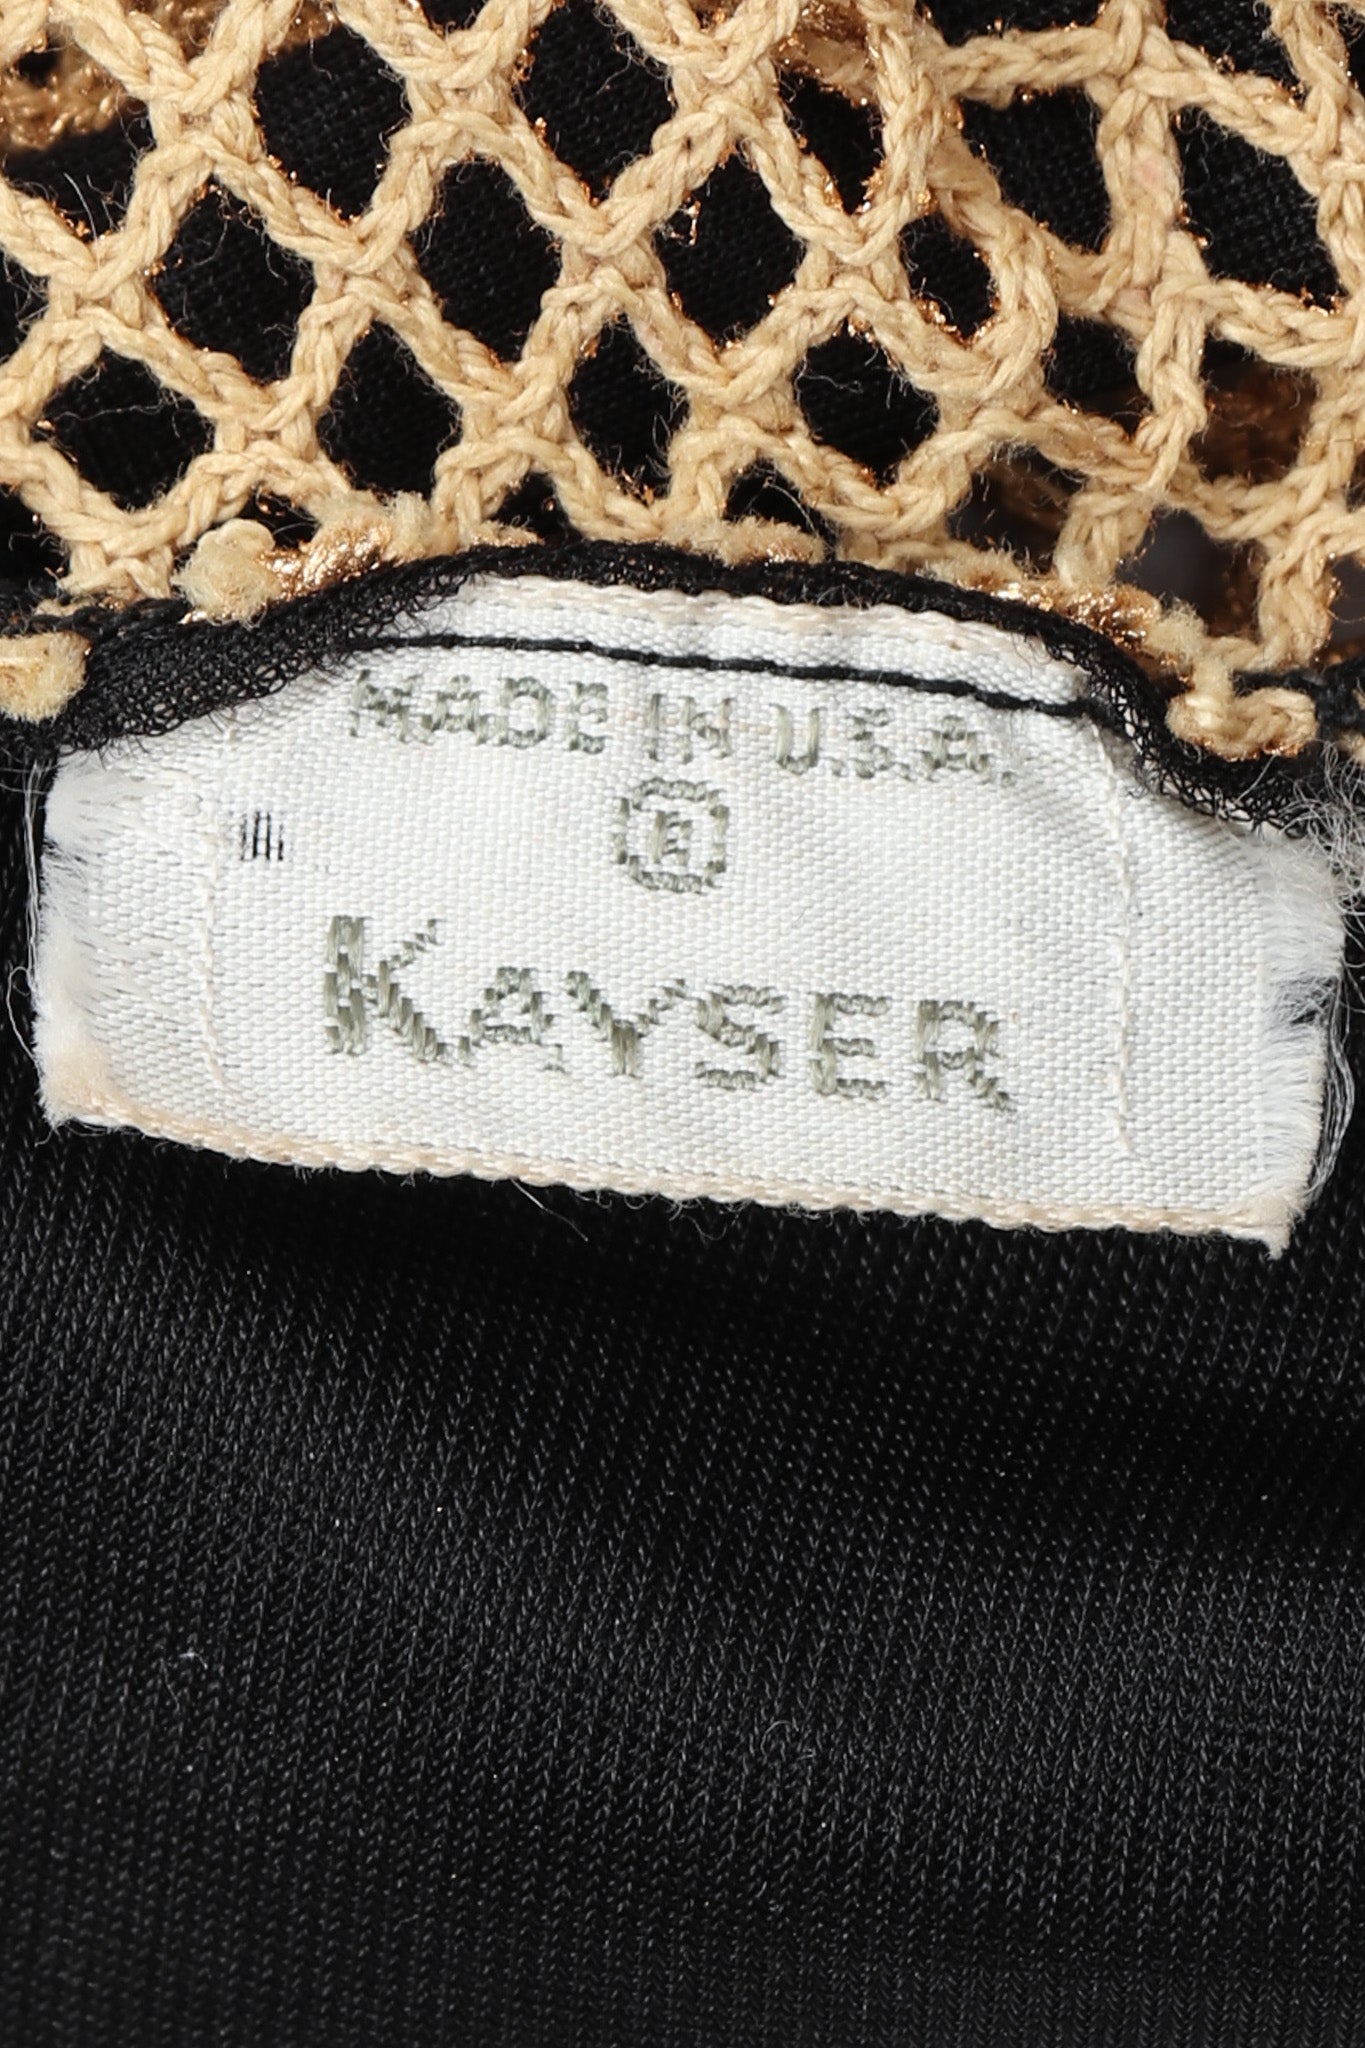 Recess Los Angeles Vintage Kayser Sheer Net Gloves